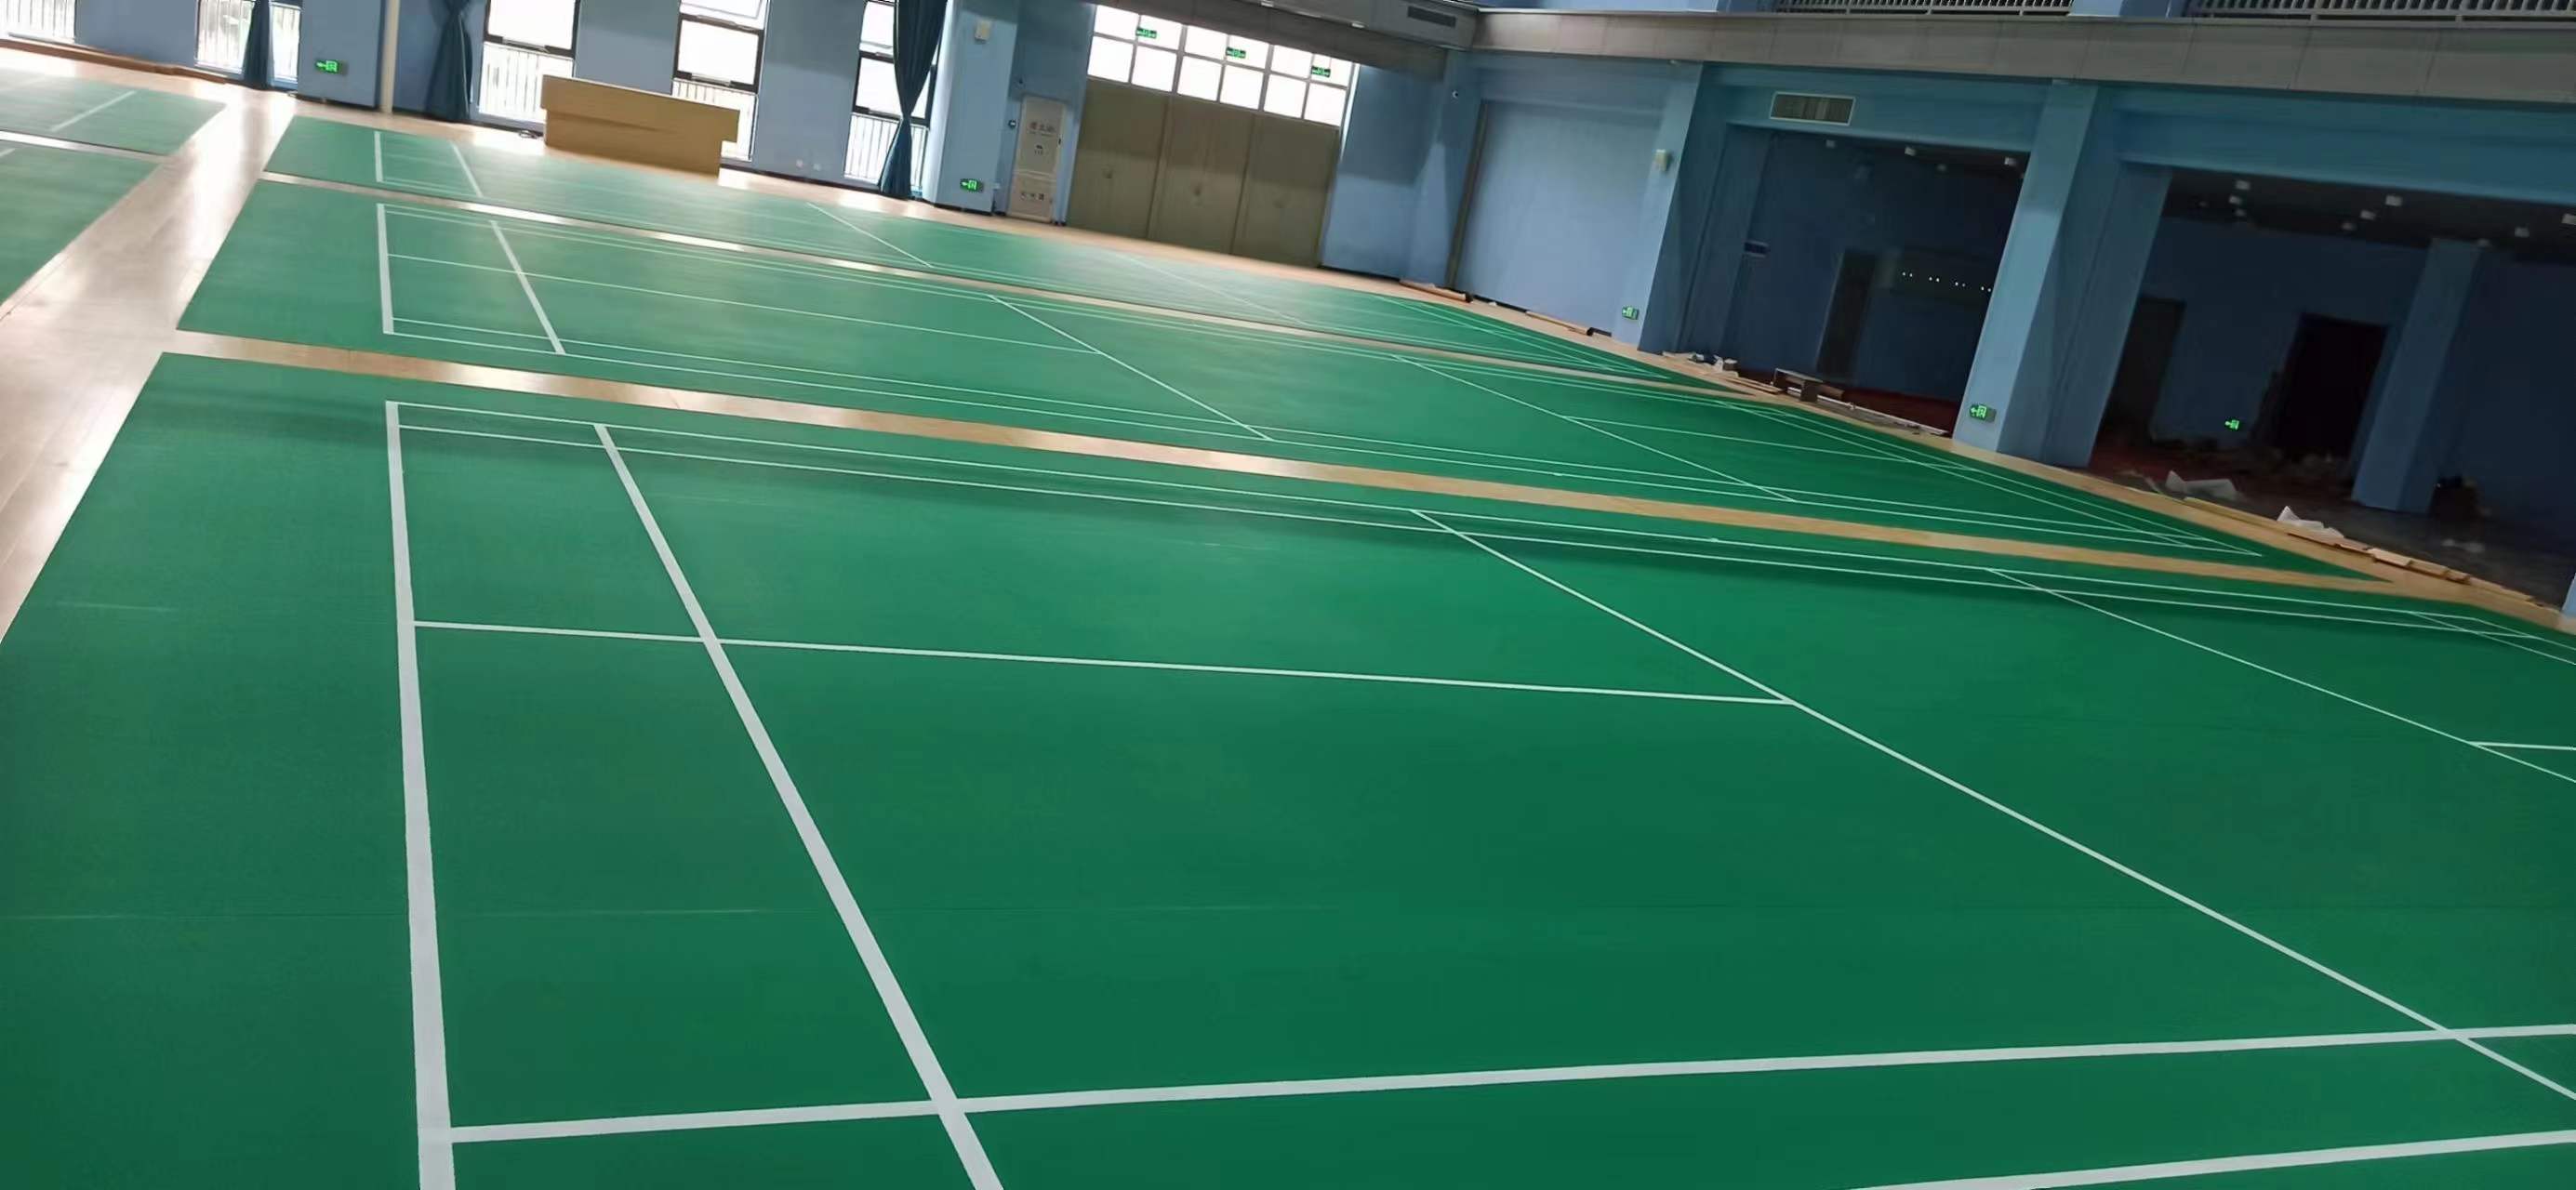 深圳宝安区沙溪小学羽毛球球场安装完成